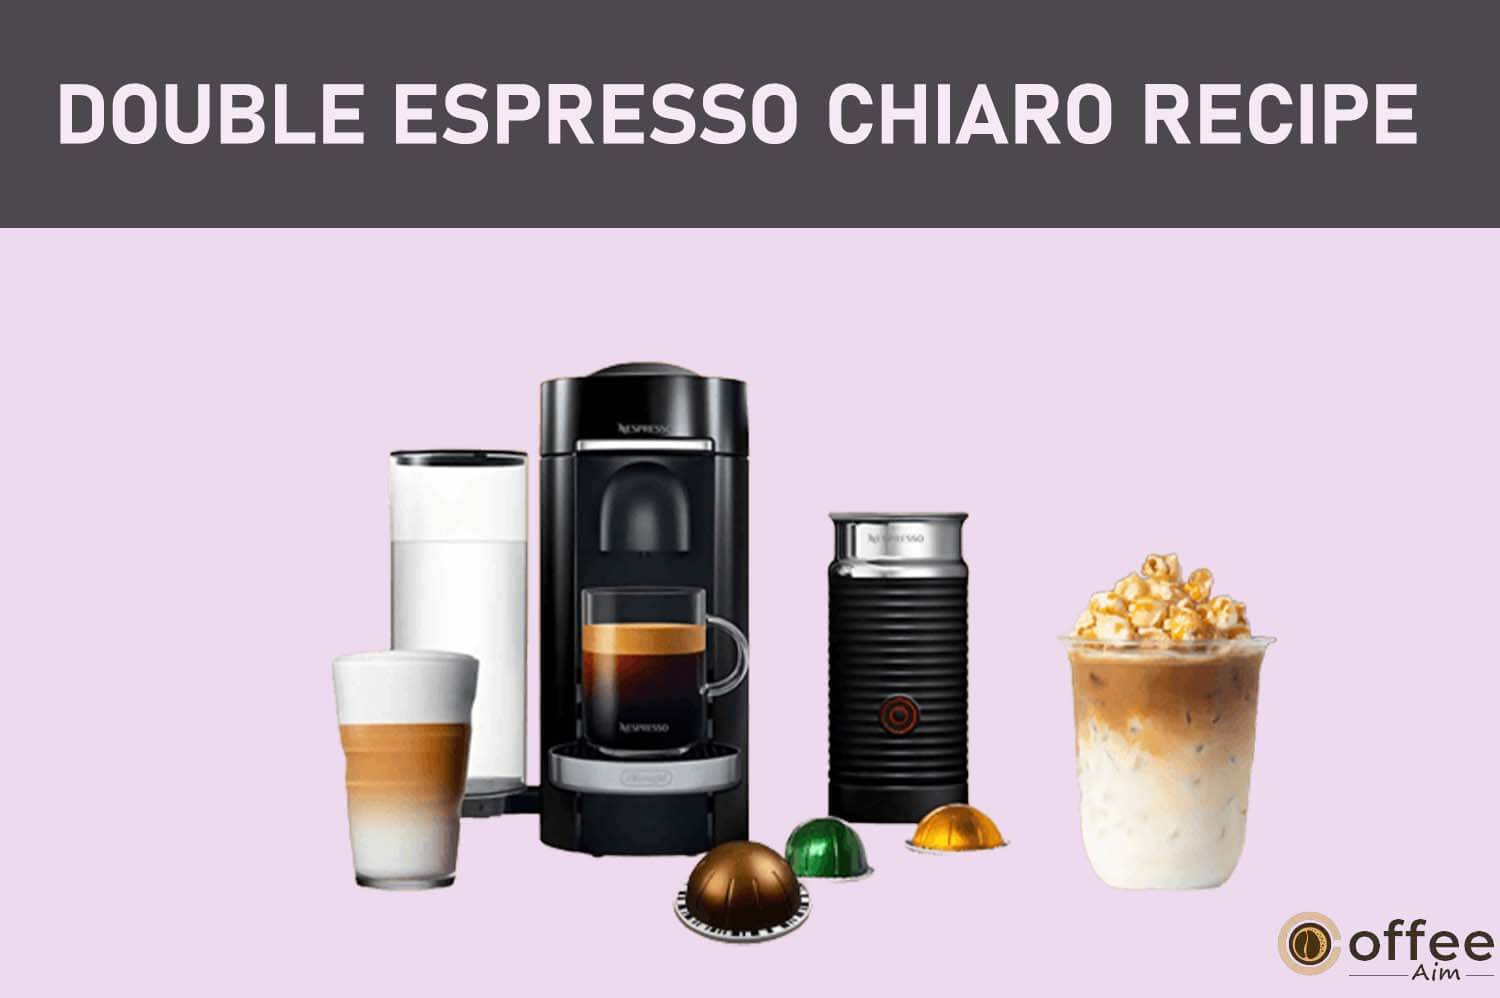 Featured image for the article "Double Espresso Chiaro Recipe"